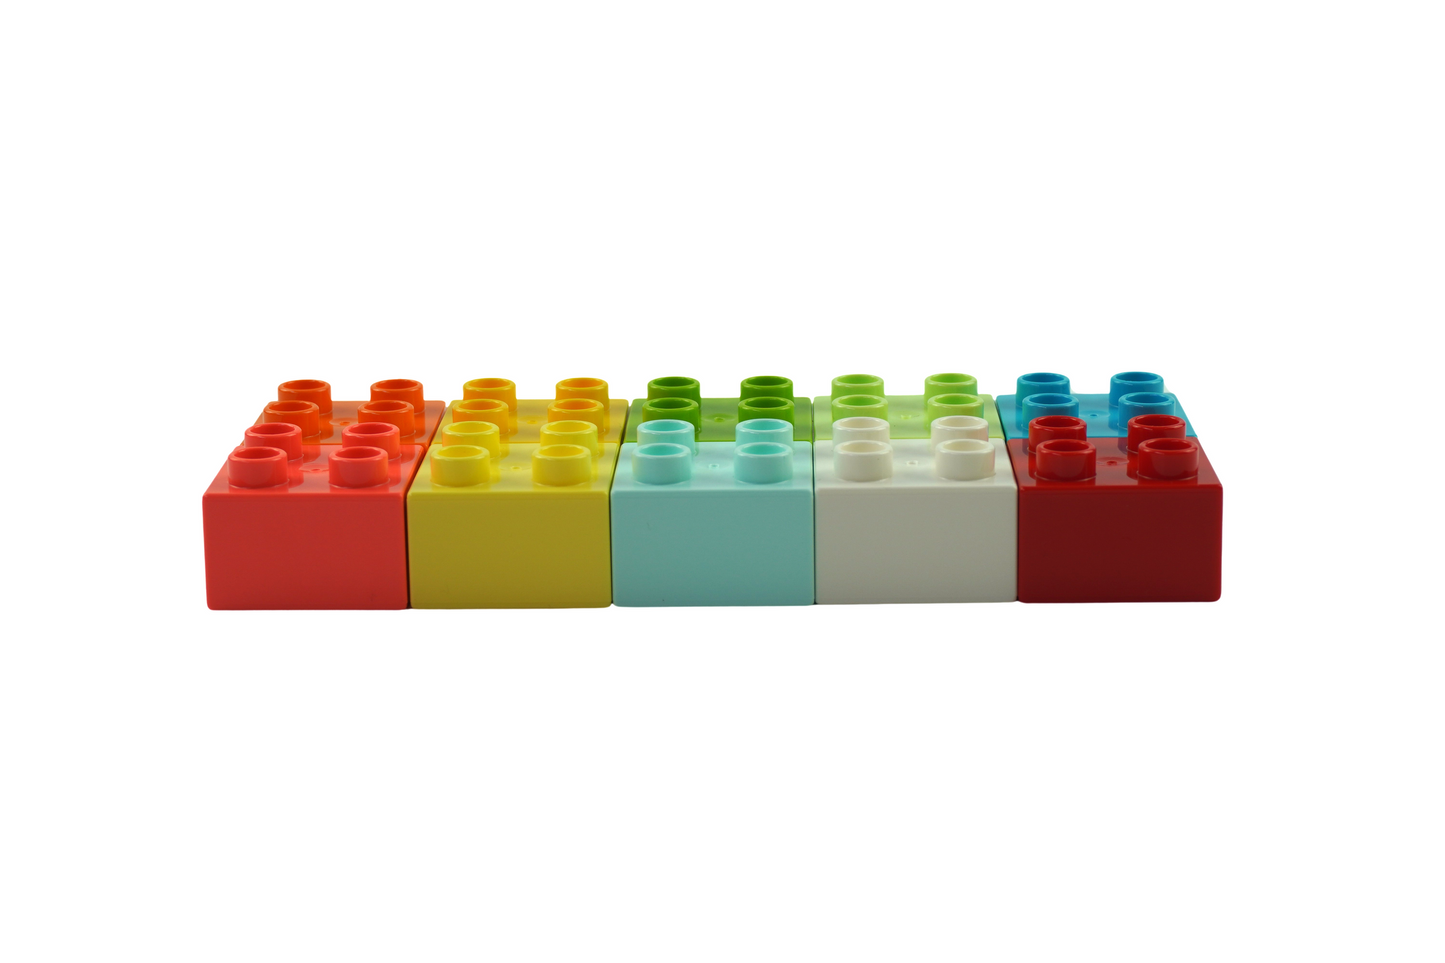 LEGO®DUPLO®2x2 stenen bouwstenen basisbouwblokken kleurrijk gemengd-3437 NIEUW!  Aantal 100x